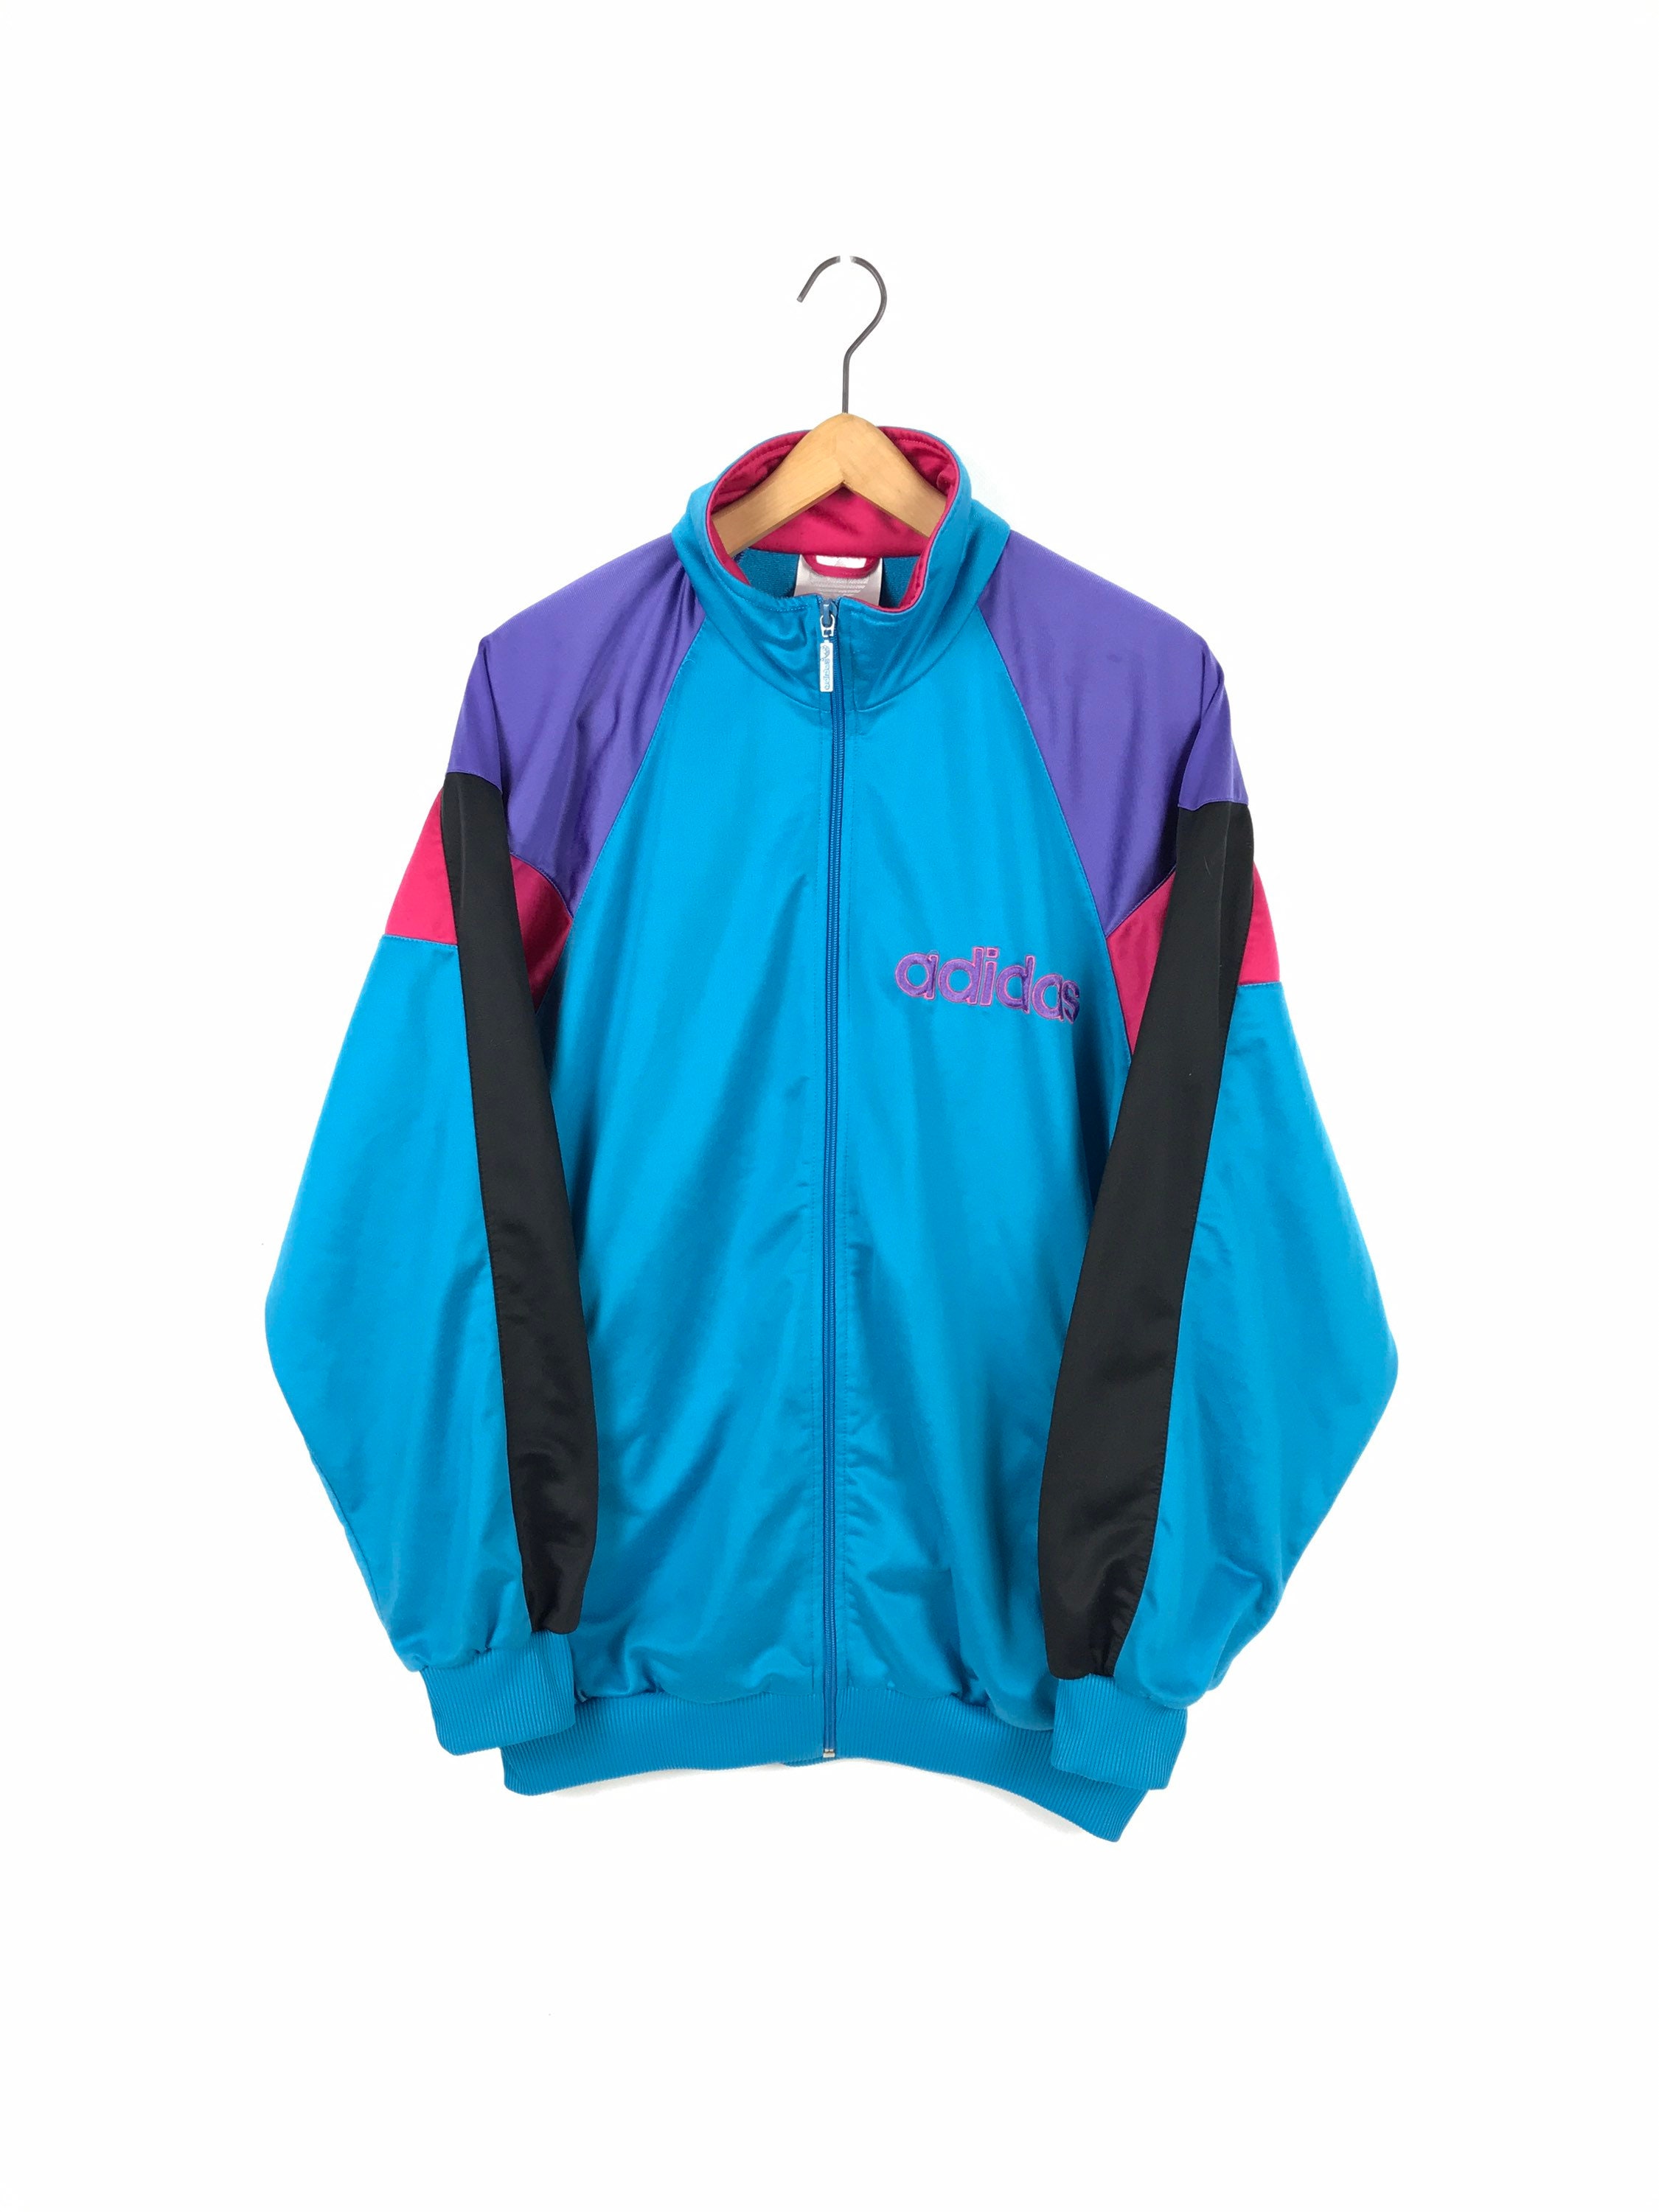 Vintage ADIDAS track jacket 90s retro multicolored track top | Etsy